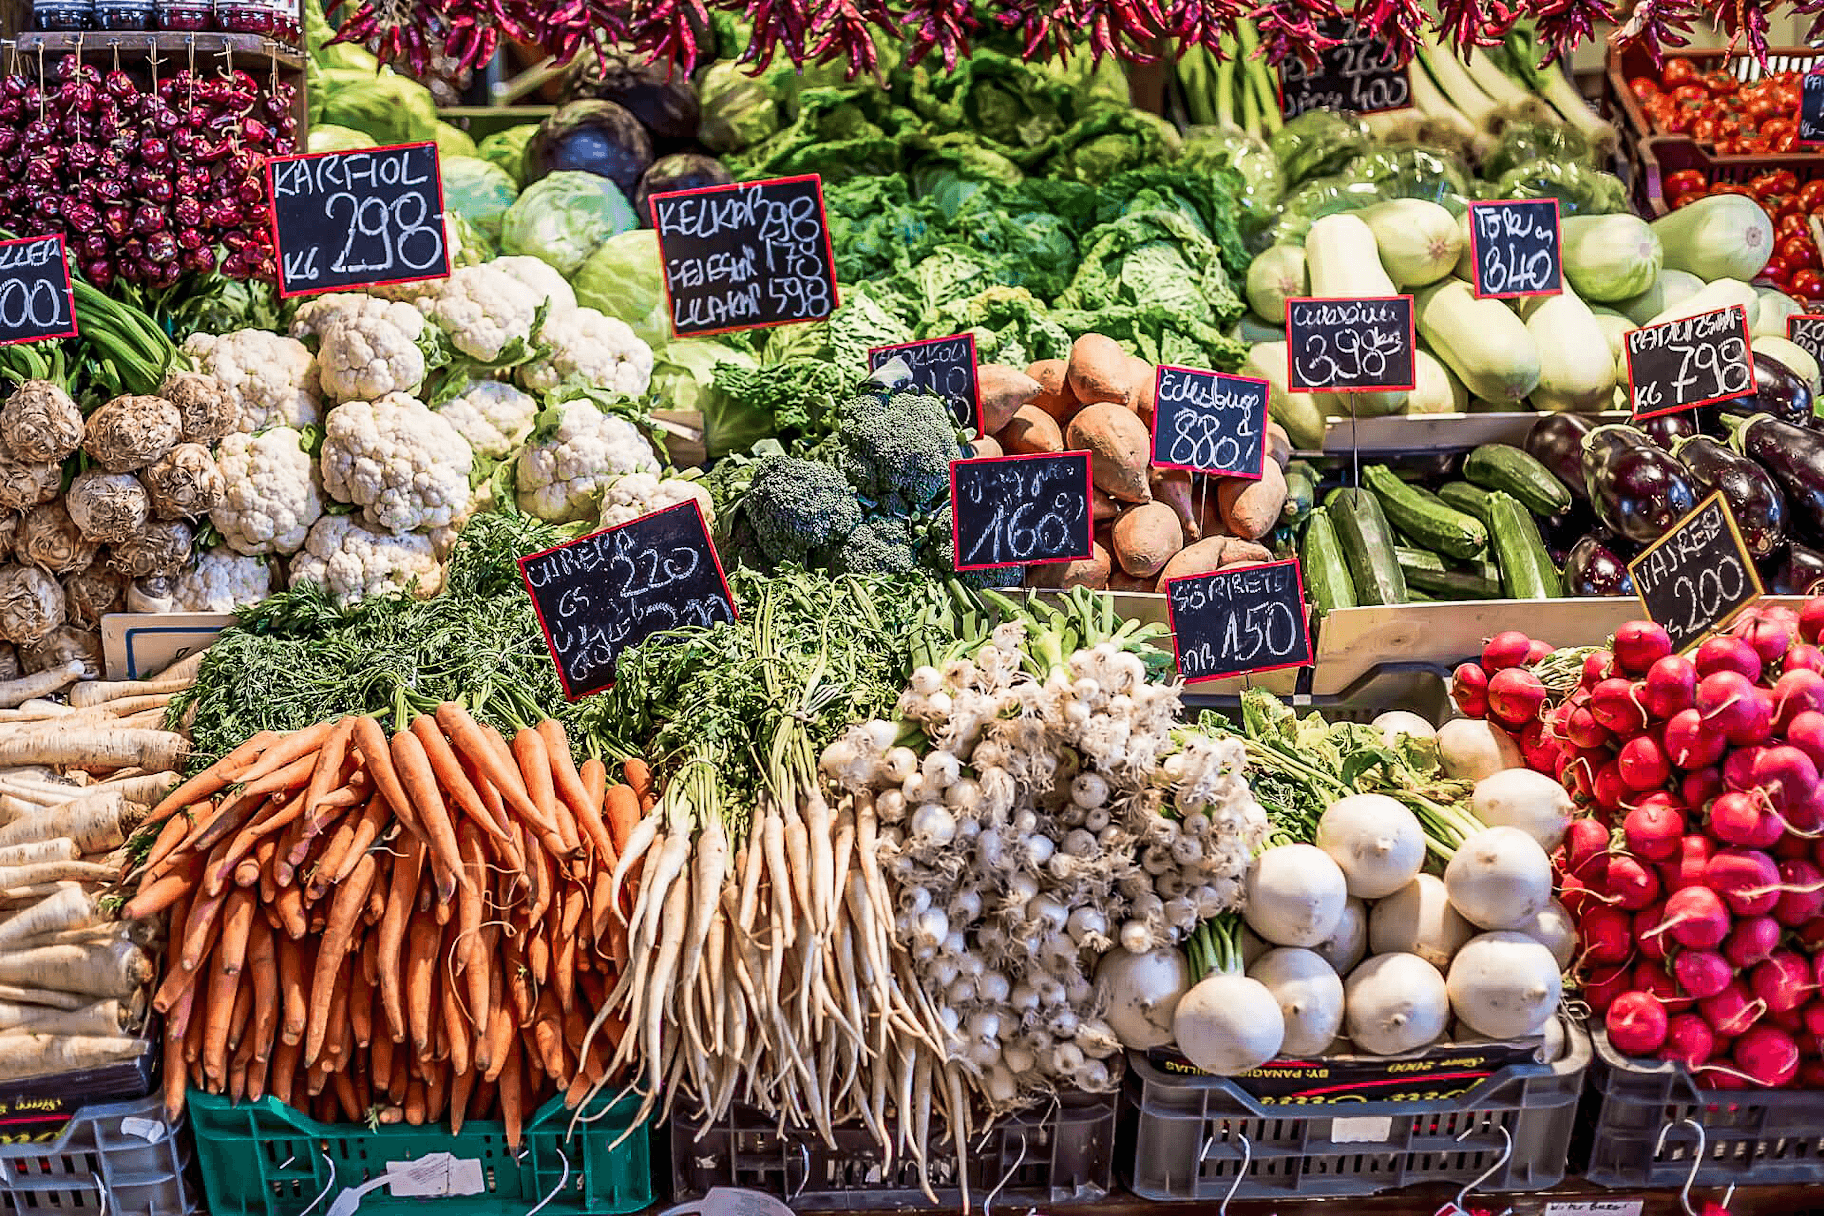 Verduras regionales y de temporada para un menú sostenible en un mercado.